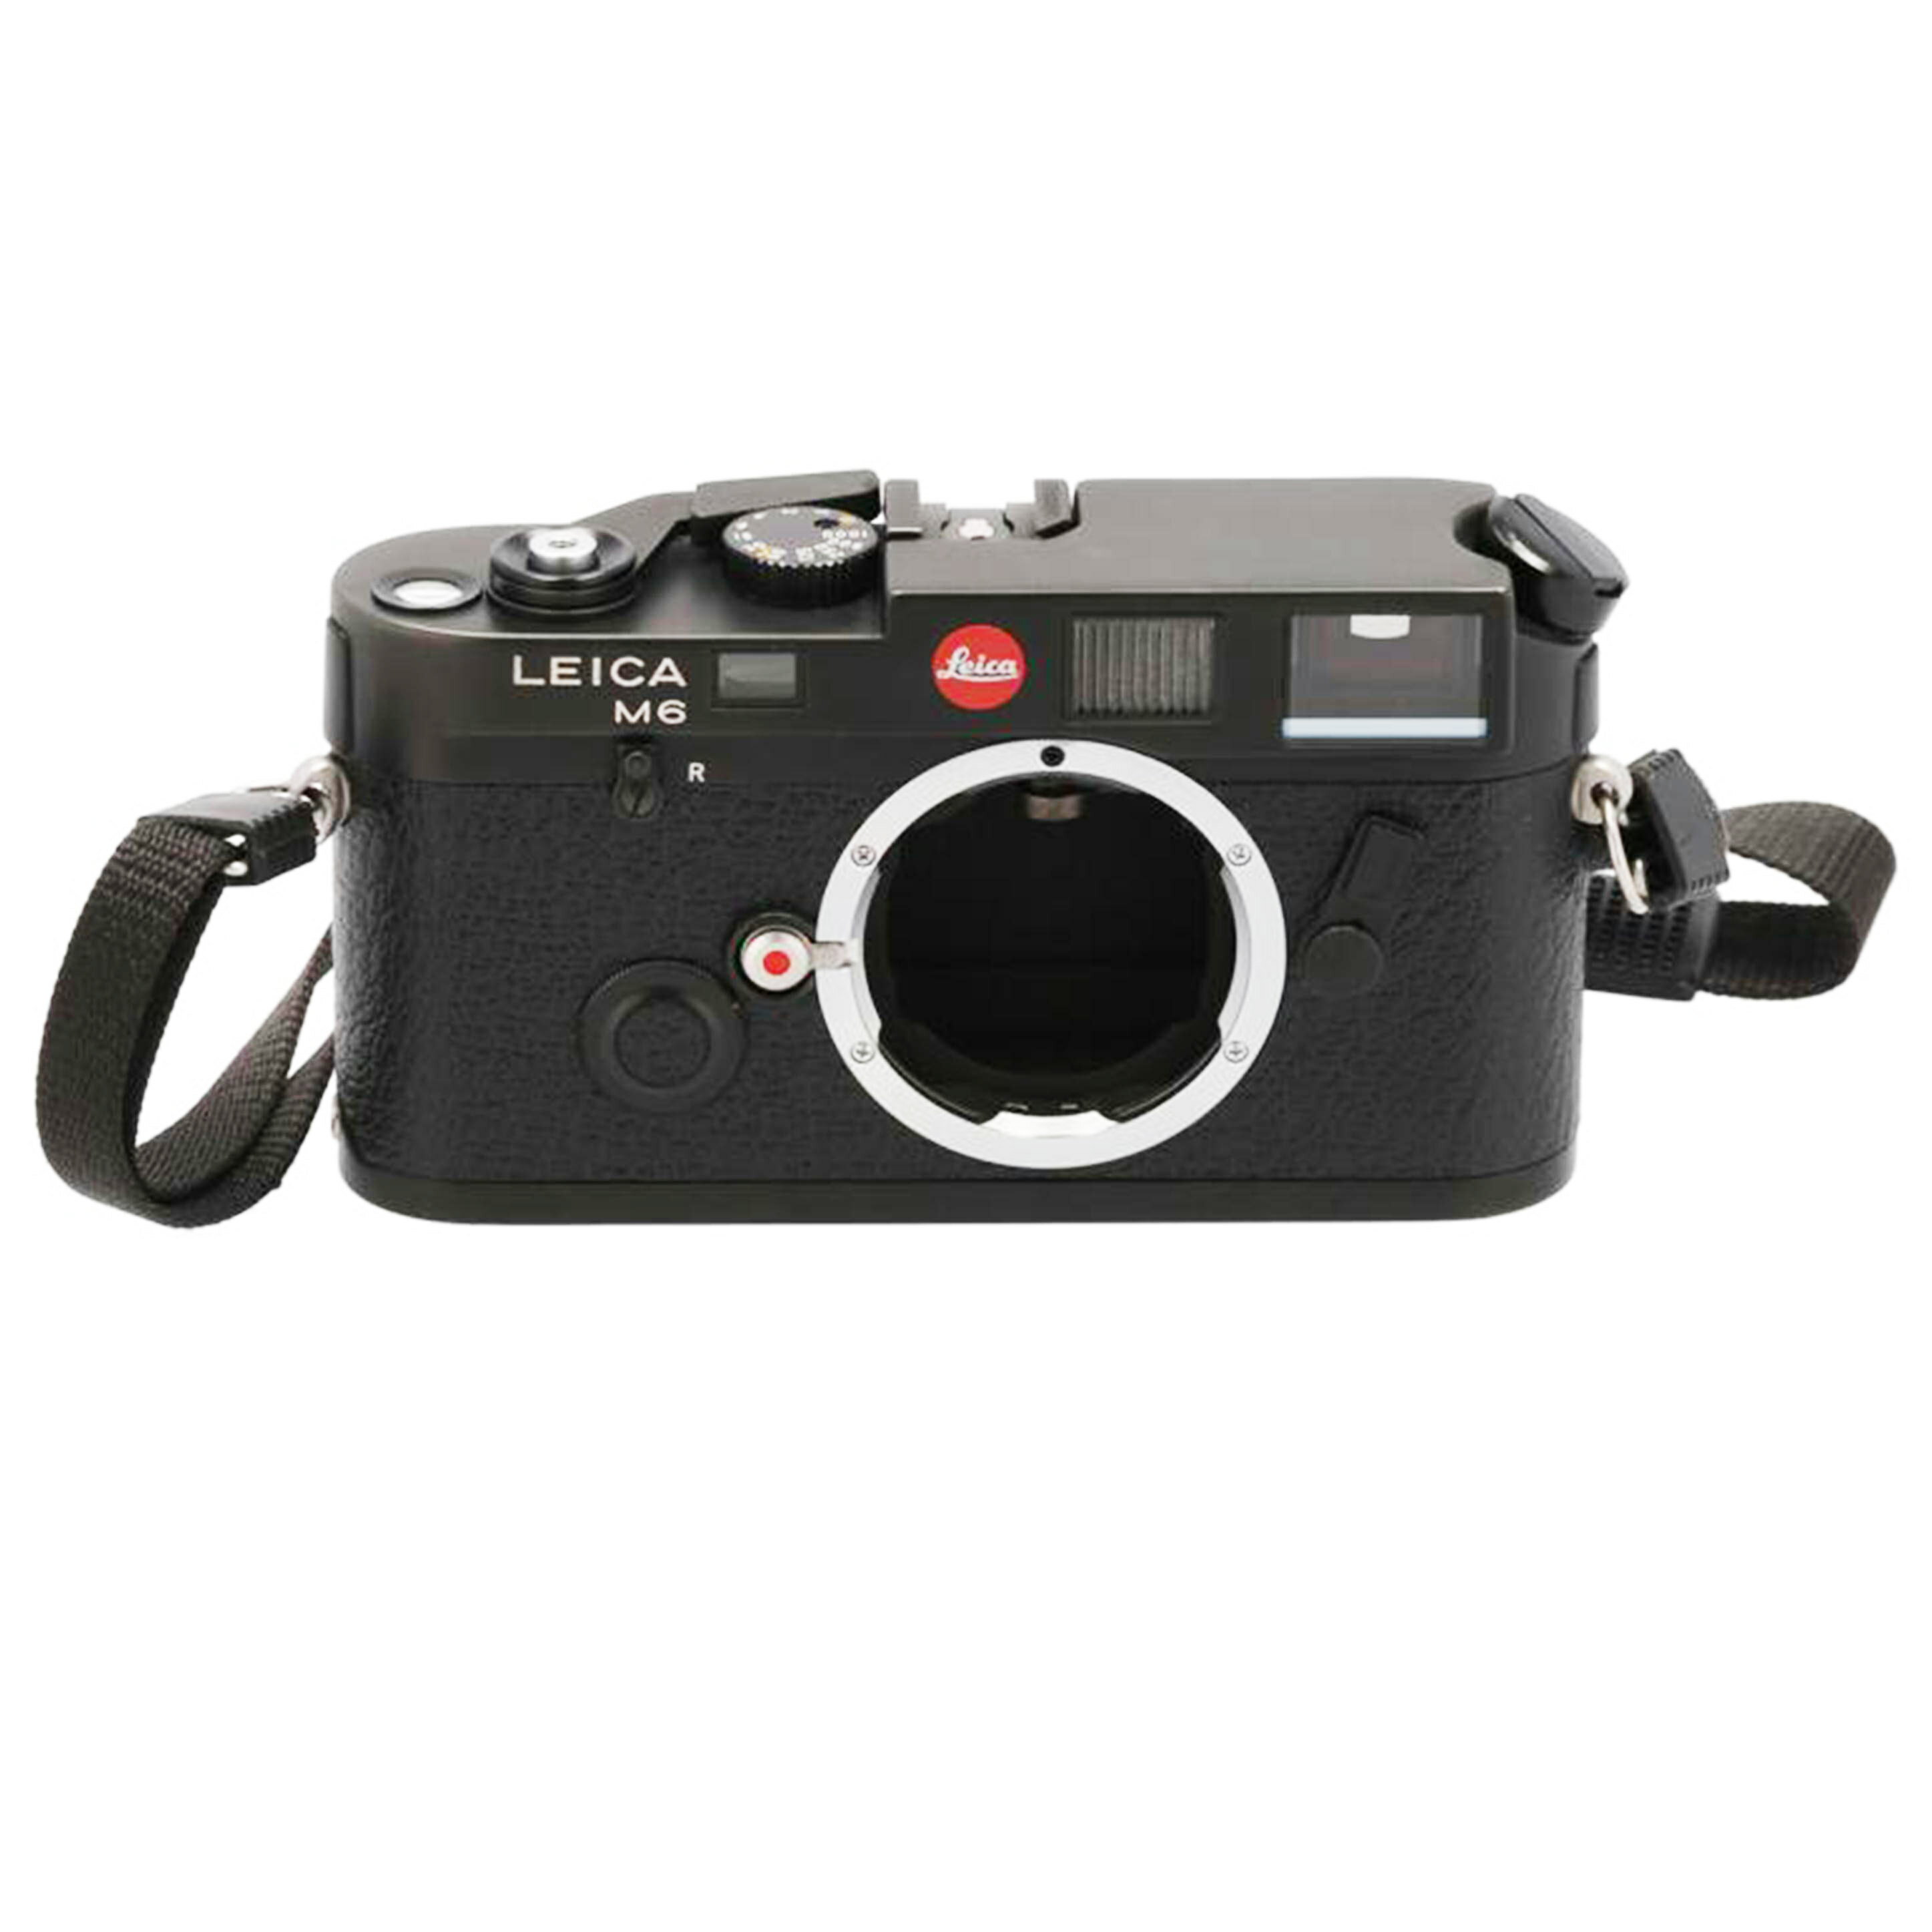 LEICA ライカ/レンジファインダーカメラ/M6 ブラック/1780301/カメラ関連/Bランク/05【中古】